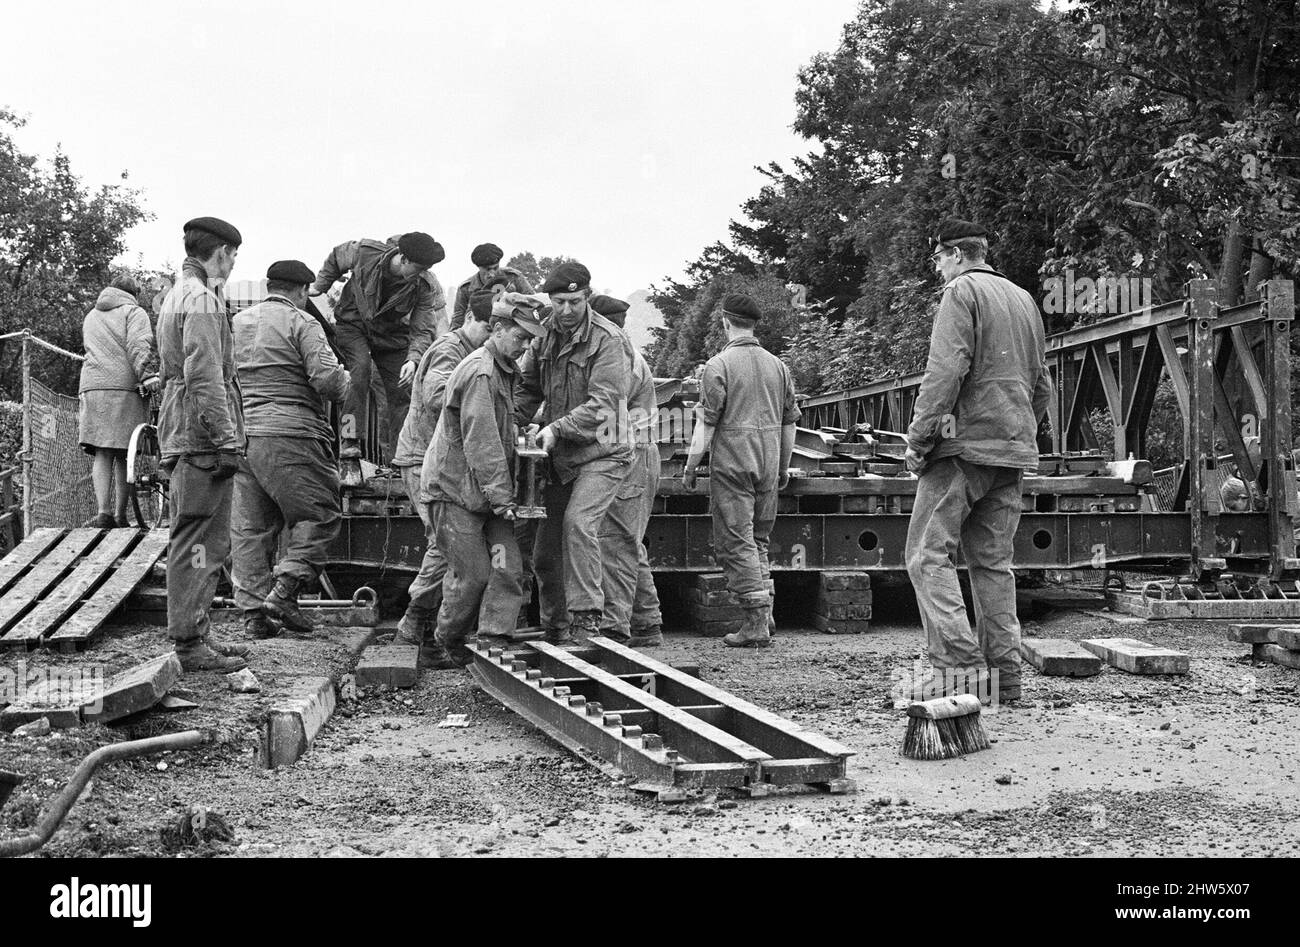 Les soldats des Royal Engineers construisent des ponts pour aider les résidents locaux après de fortes inondations dans le Kent. 17th septembre 1968. Banque D'Images